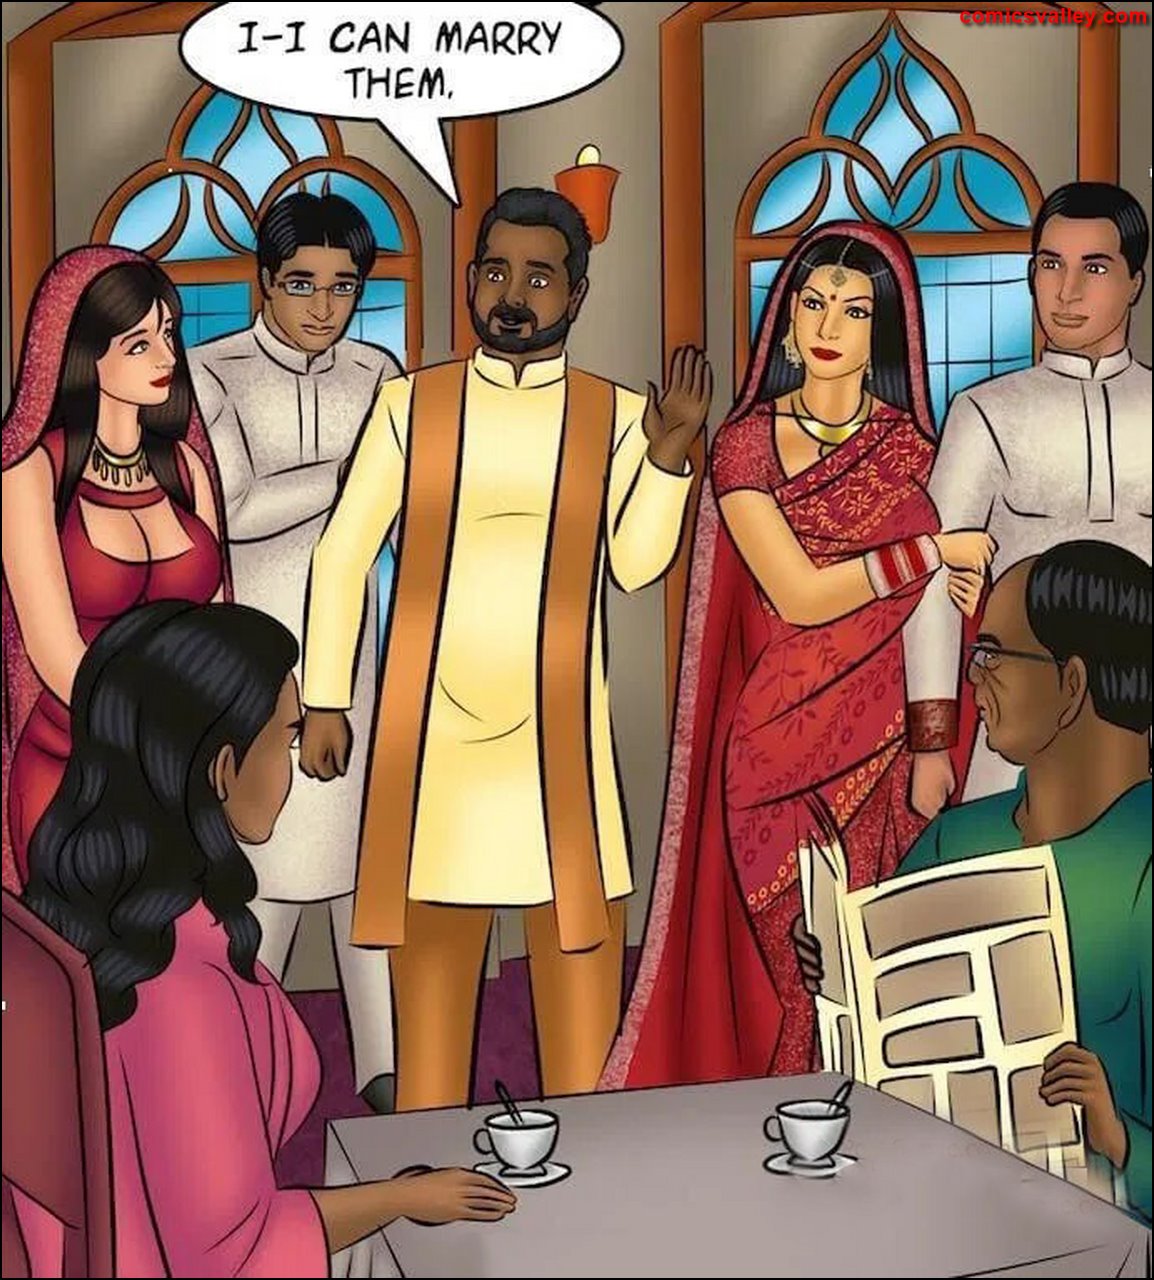 savita bhabhi comics